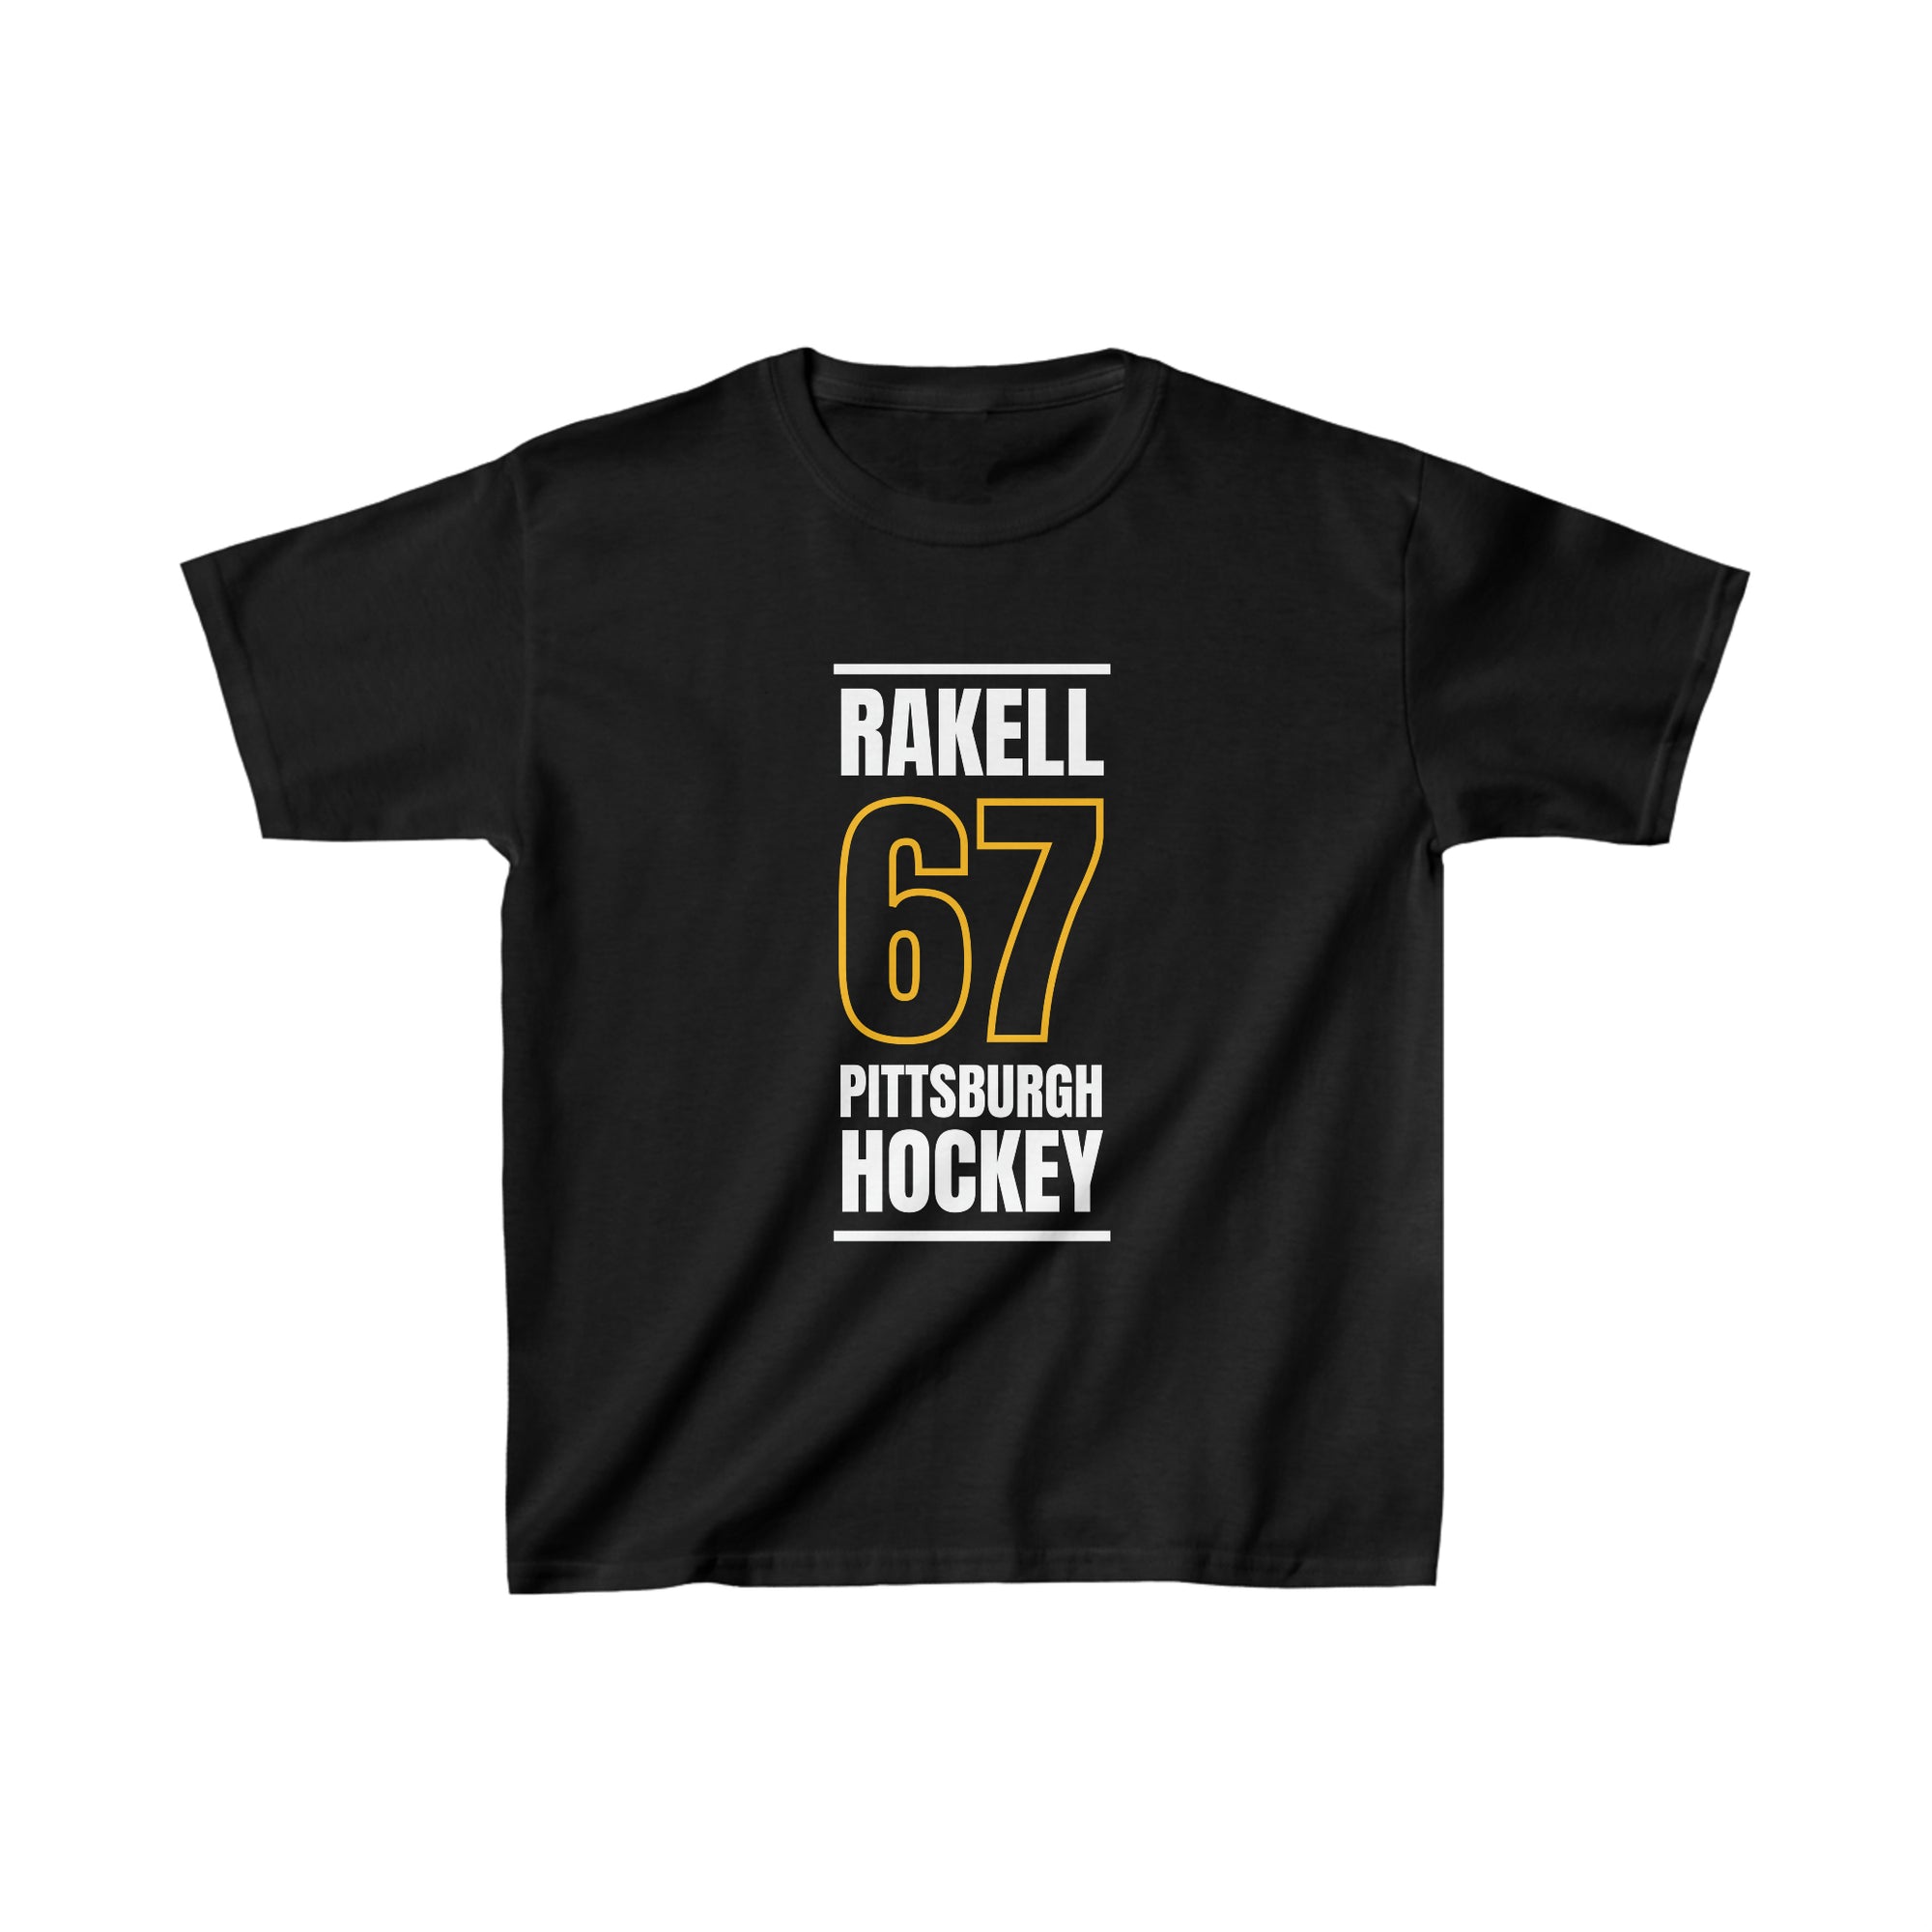 Rakell 67 Pittsburgh Hockey Black Vertical Design Kids Tee